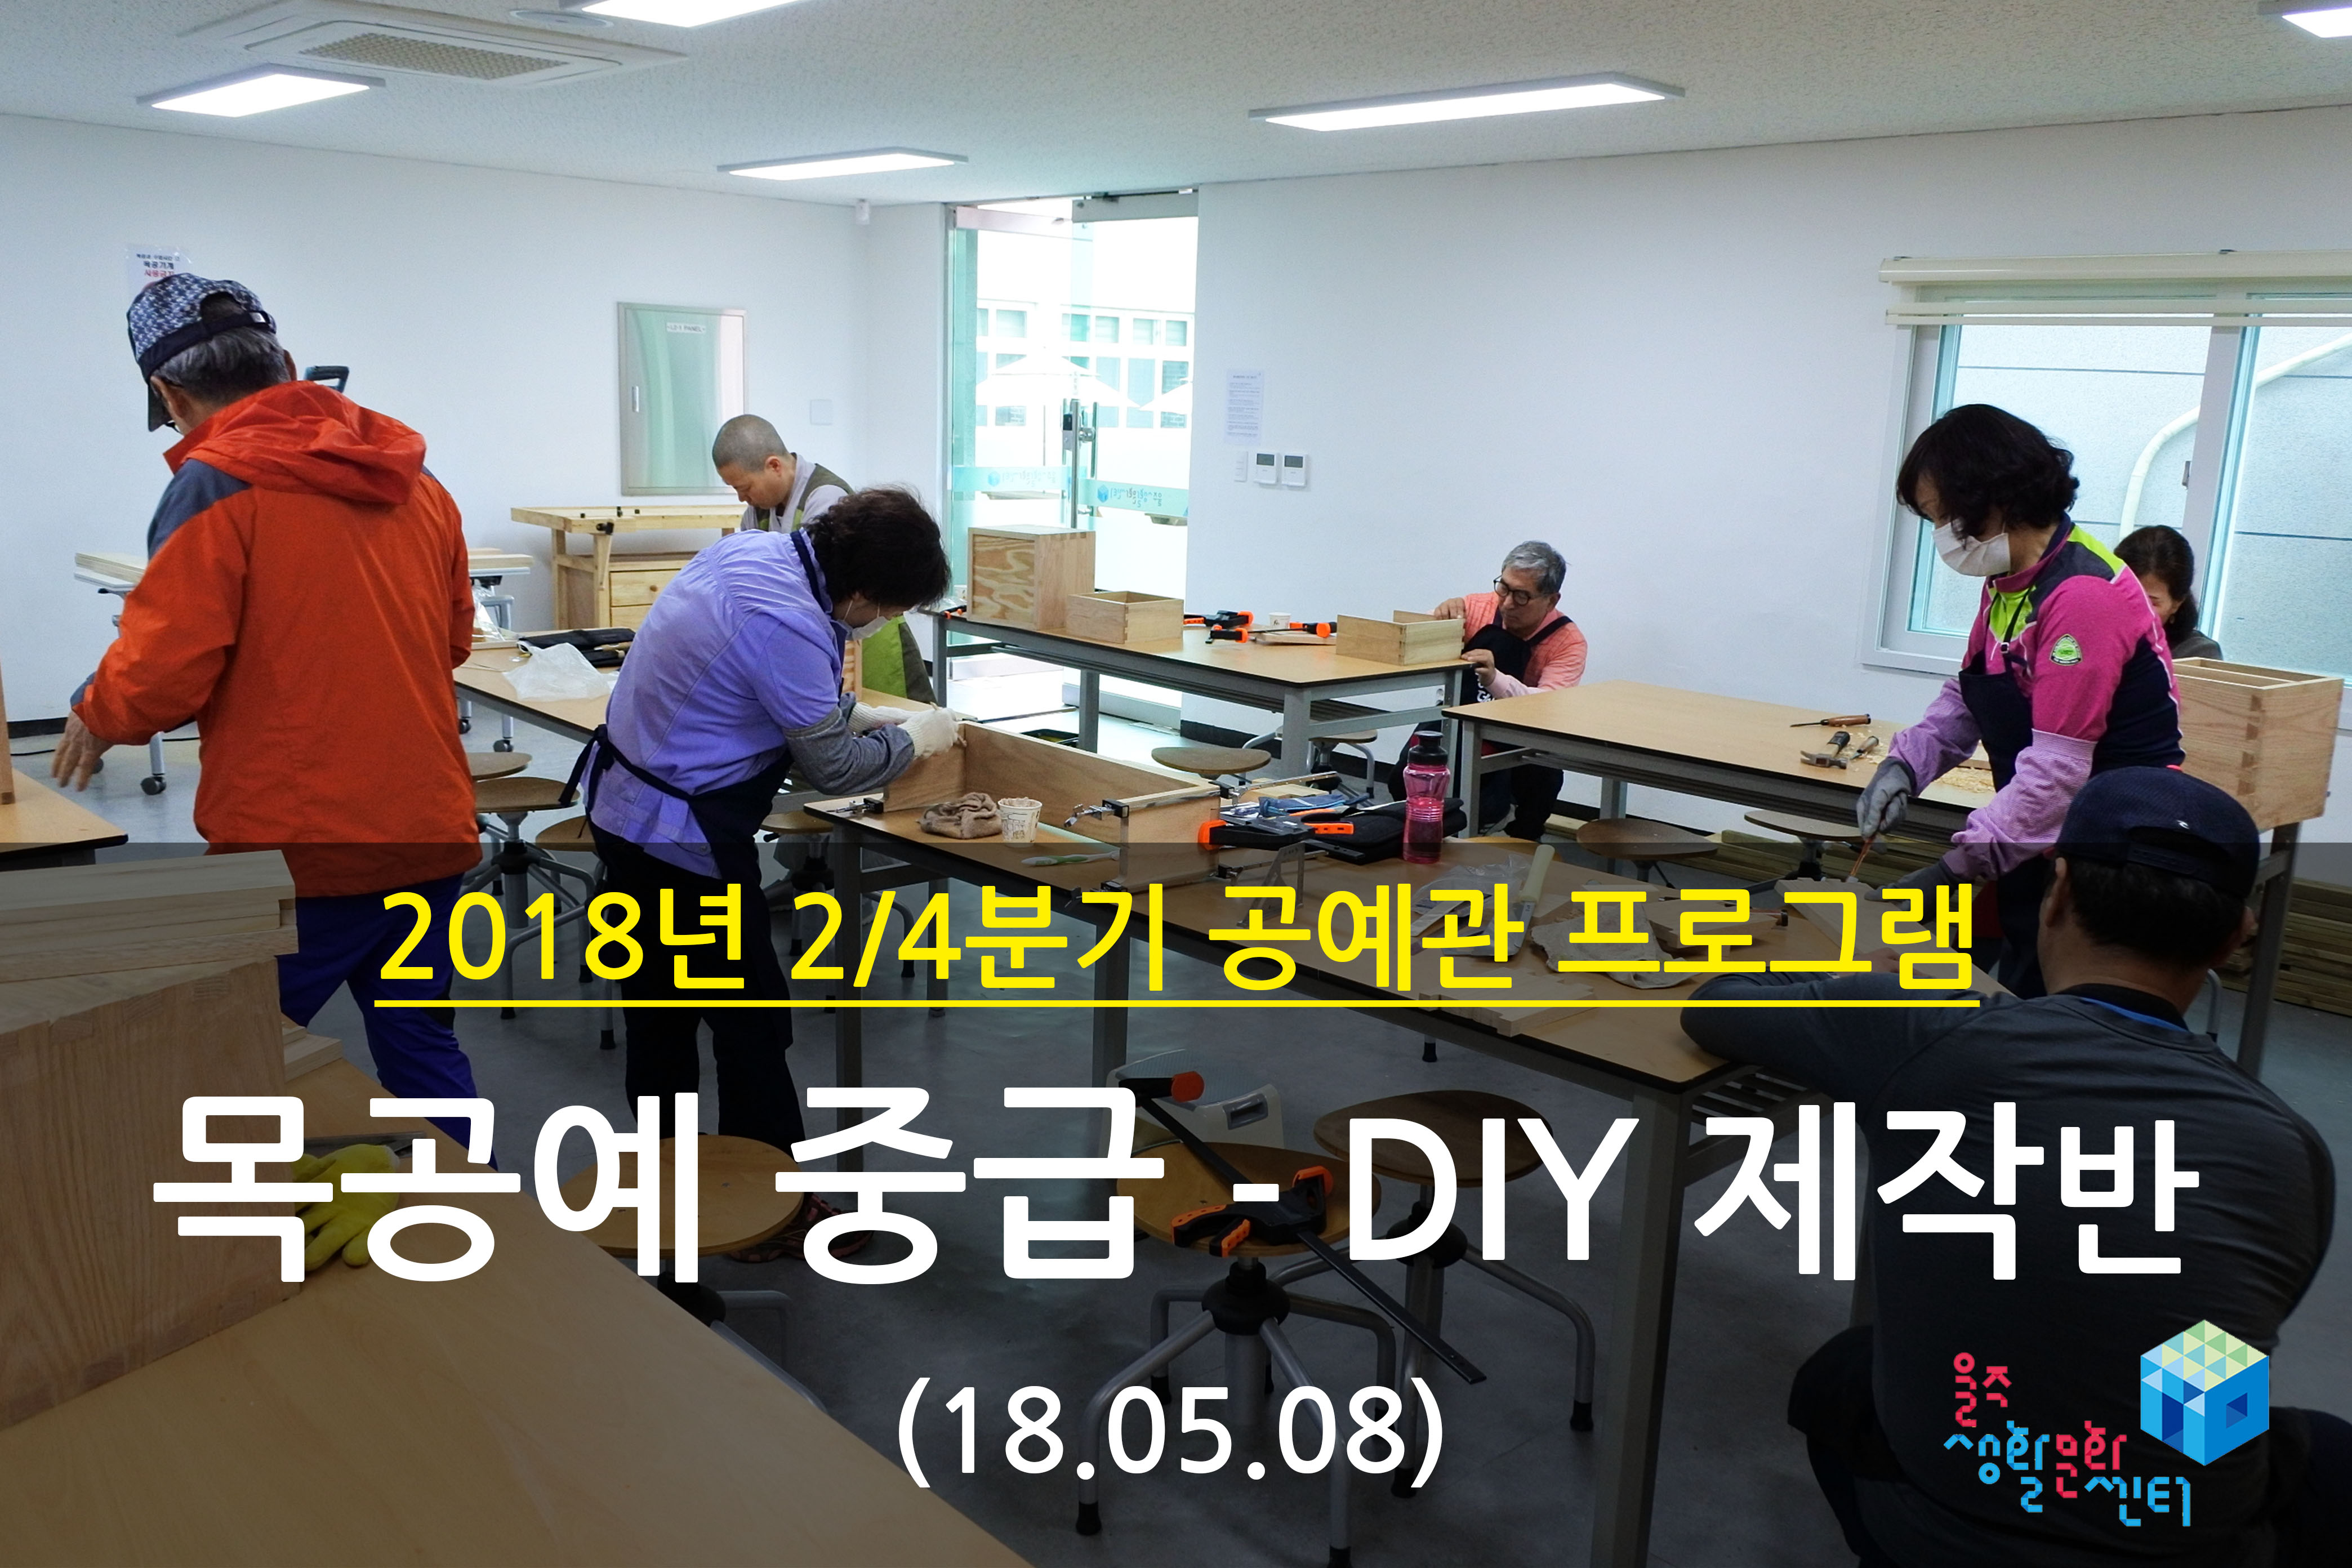 2018.05.08 _ 목공예 중급 - DIY 제작반 _ 2/4분기 6주차 수업